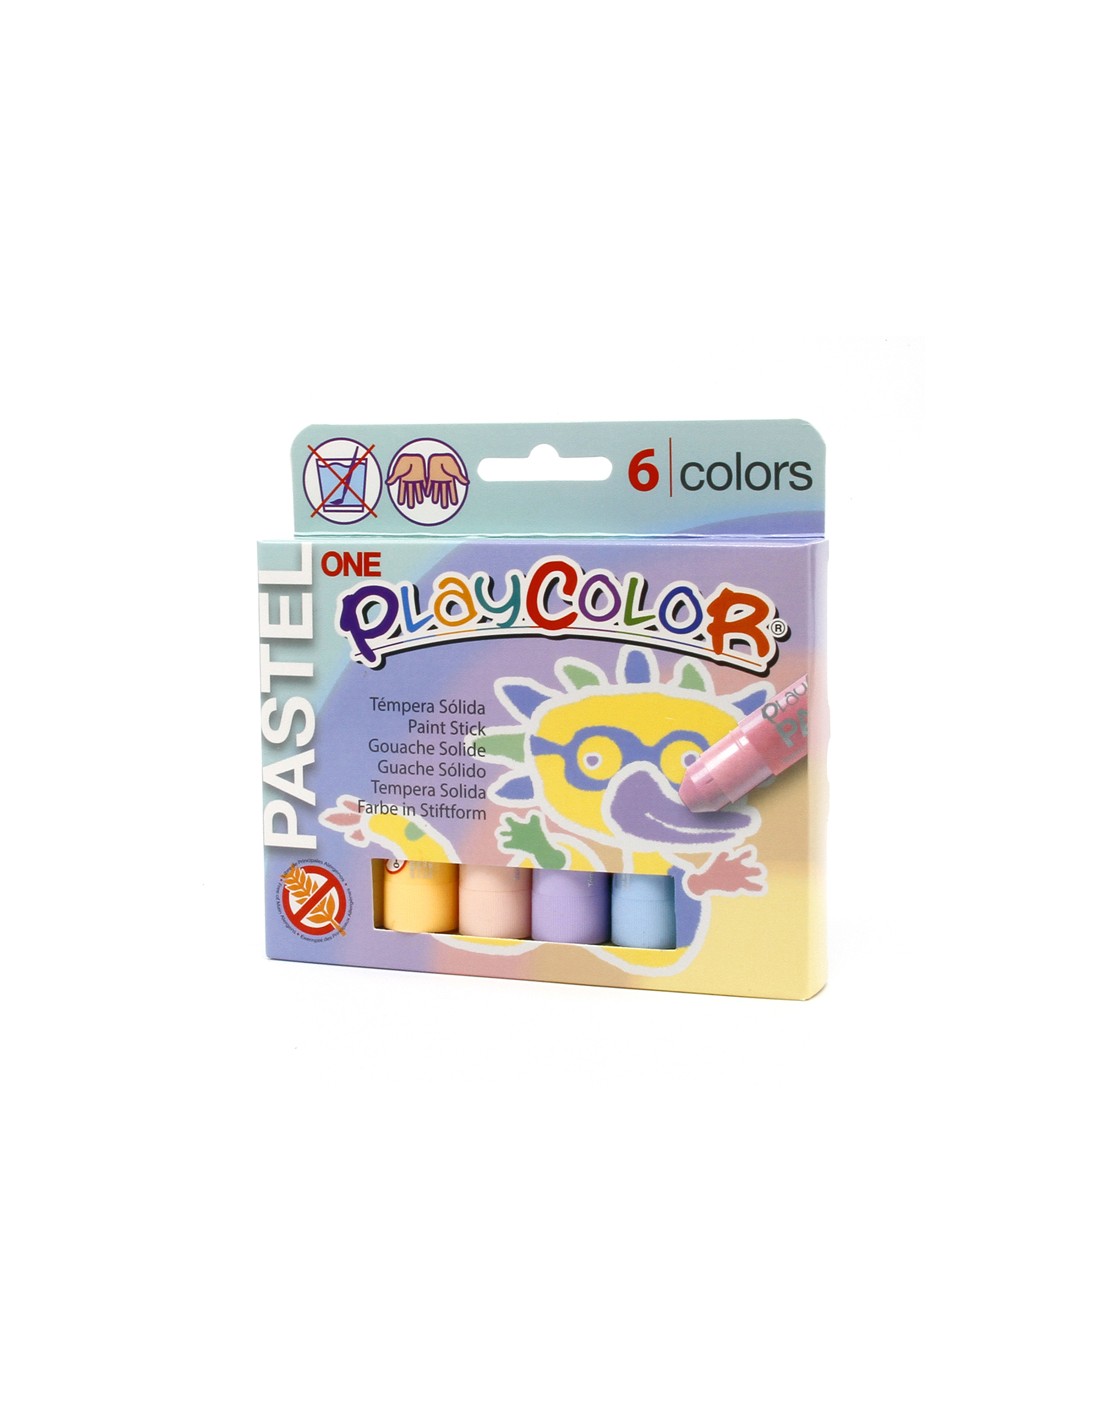 Tempera solida en barra playcolor pocket escolar caja de 12 colores  surtidos en